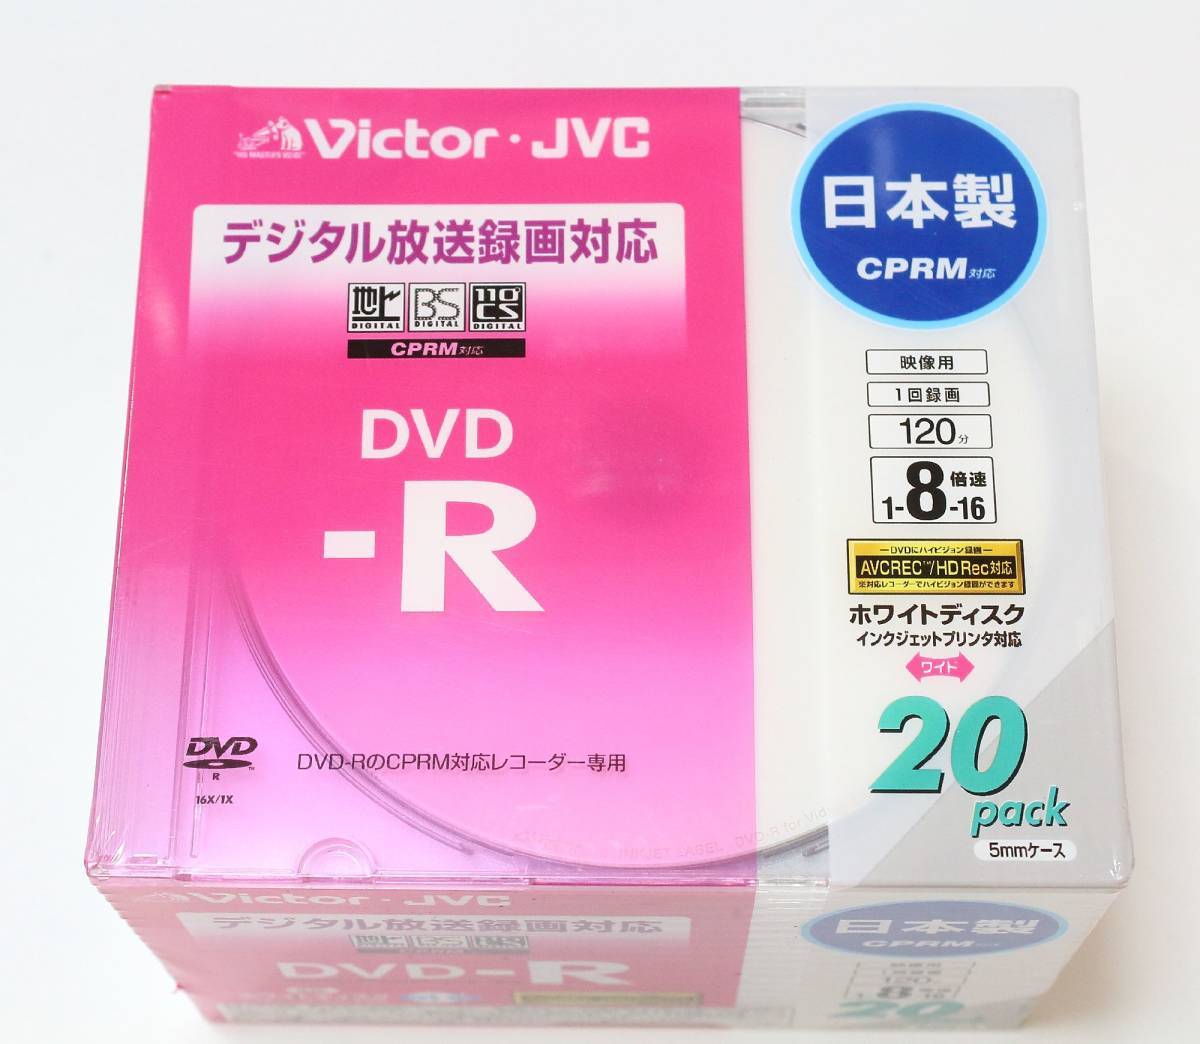 ◆【未使用】 Victor JVCケンウッド 録画用DVD-R 120分 4.7GB 20枚×6 VD-R120CM20 計120枚セット ◆NHC09025　16倍速 CPRM対応_画像2